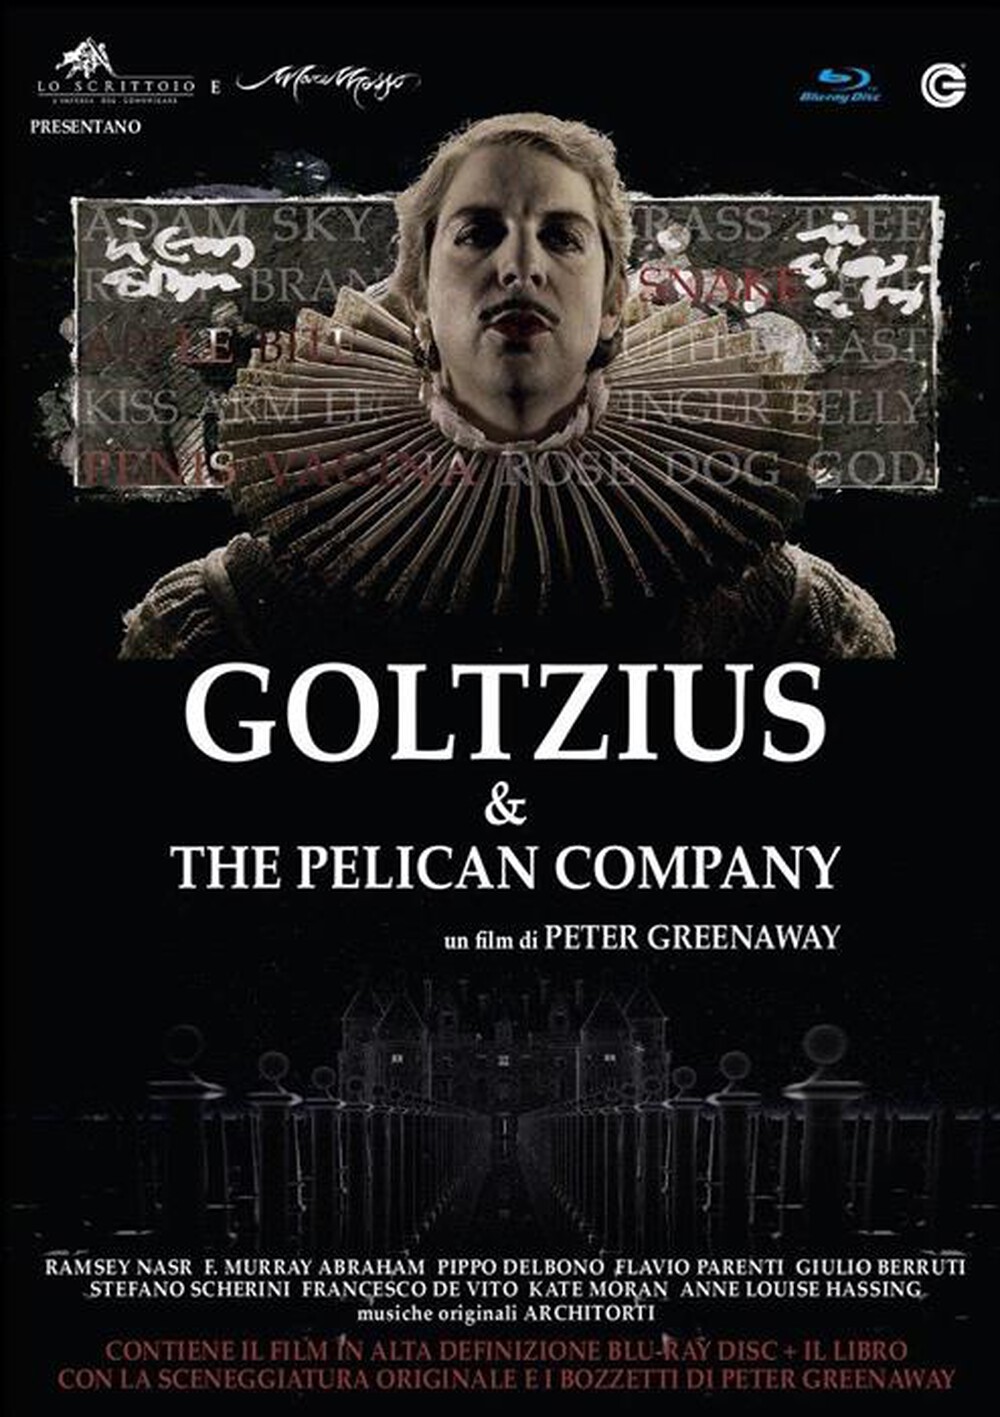 "CECCHI GORI - Goltzius And The Pelican Company (Blu-Ray+Libro)"